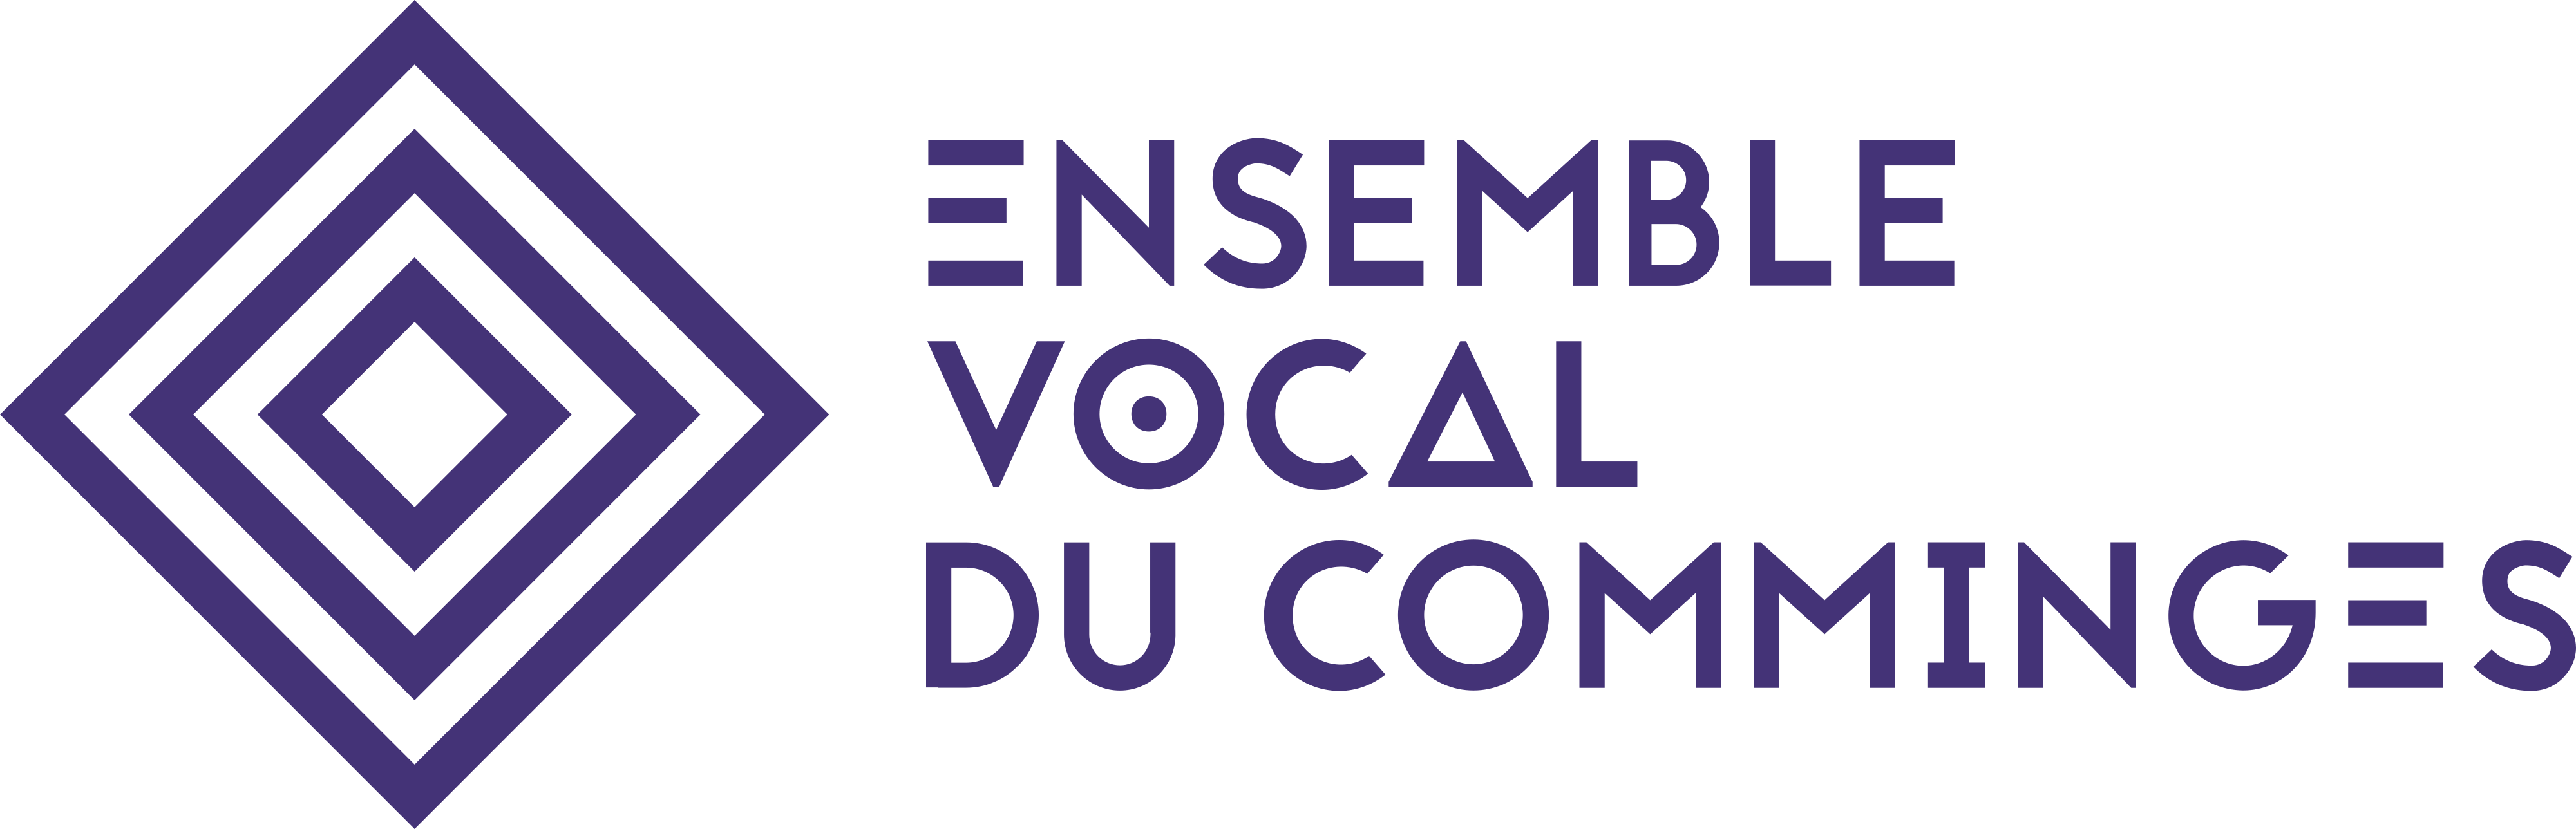 Logo Ensemble vocal du comminges